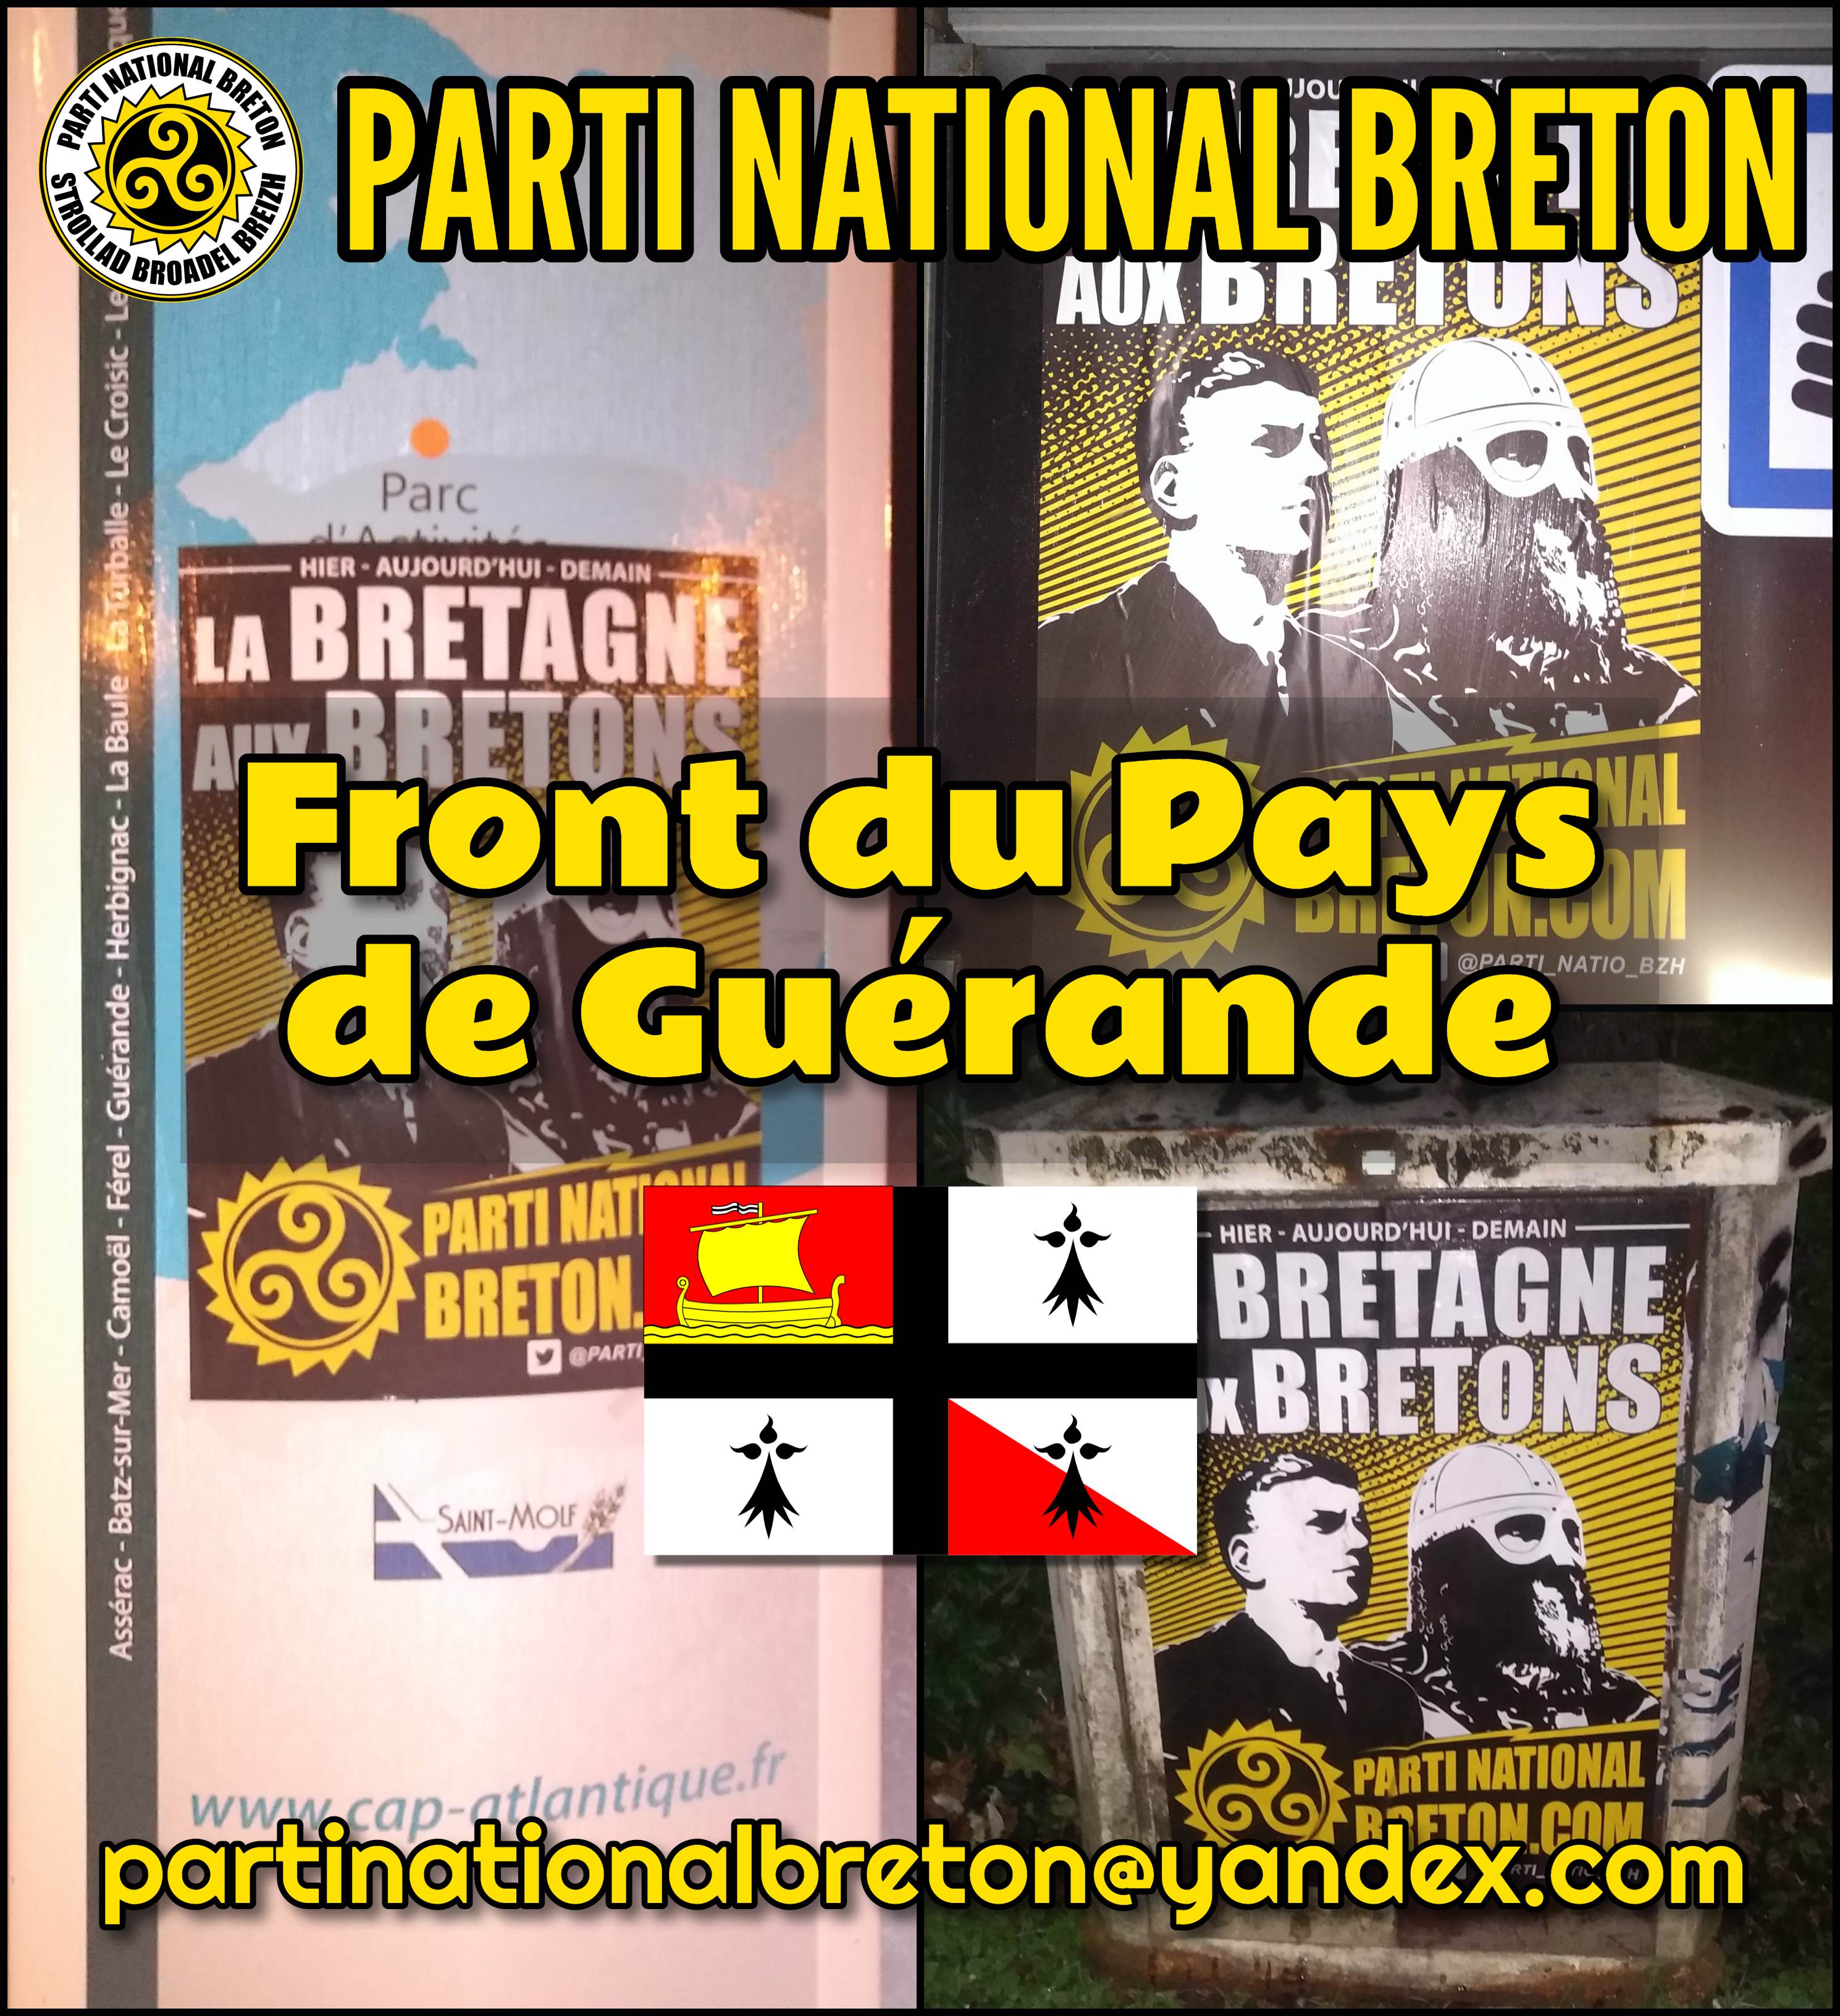 Action d’affirmation nationale bretonne dans le Pays de Guérande !